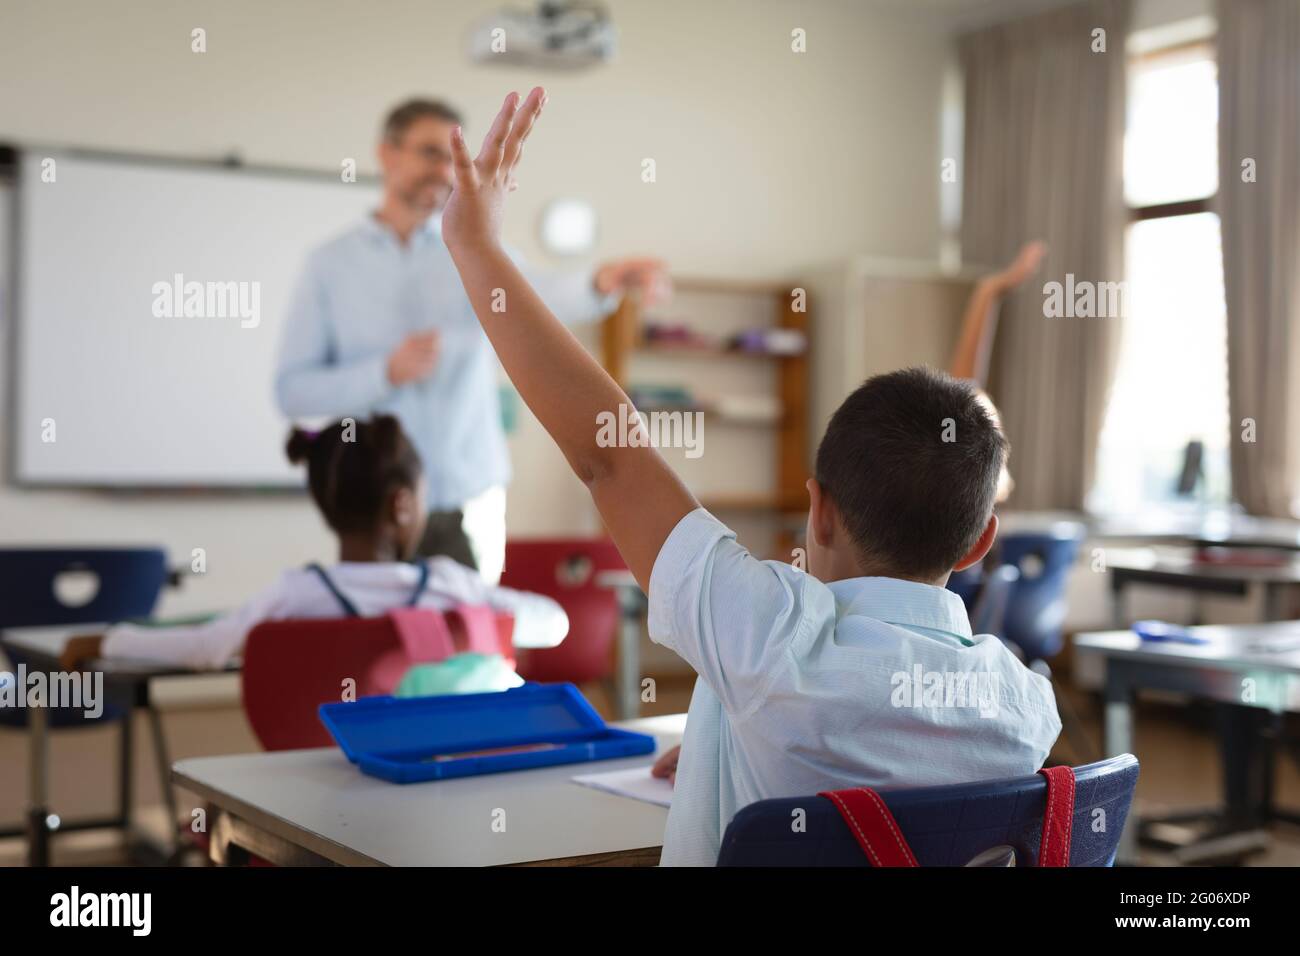 Gruppo di studenti diversi che alzano le mani nella classe delle scuole elementari Foto Stock